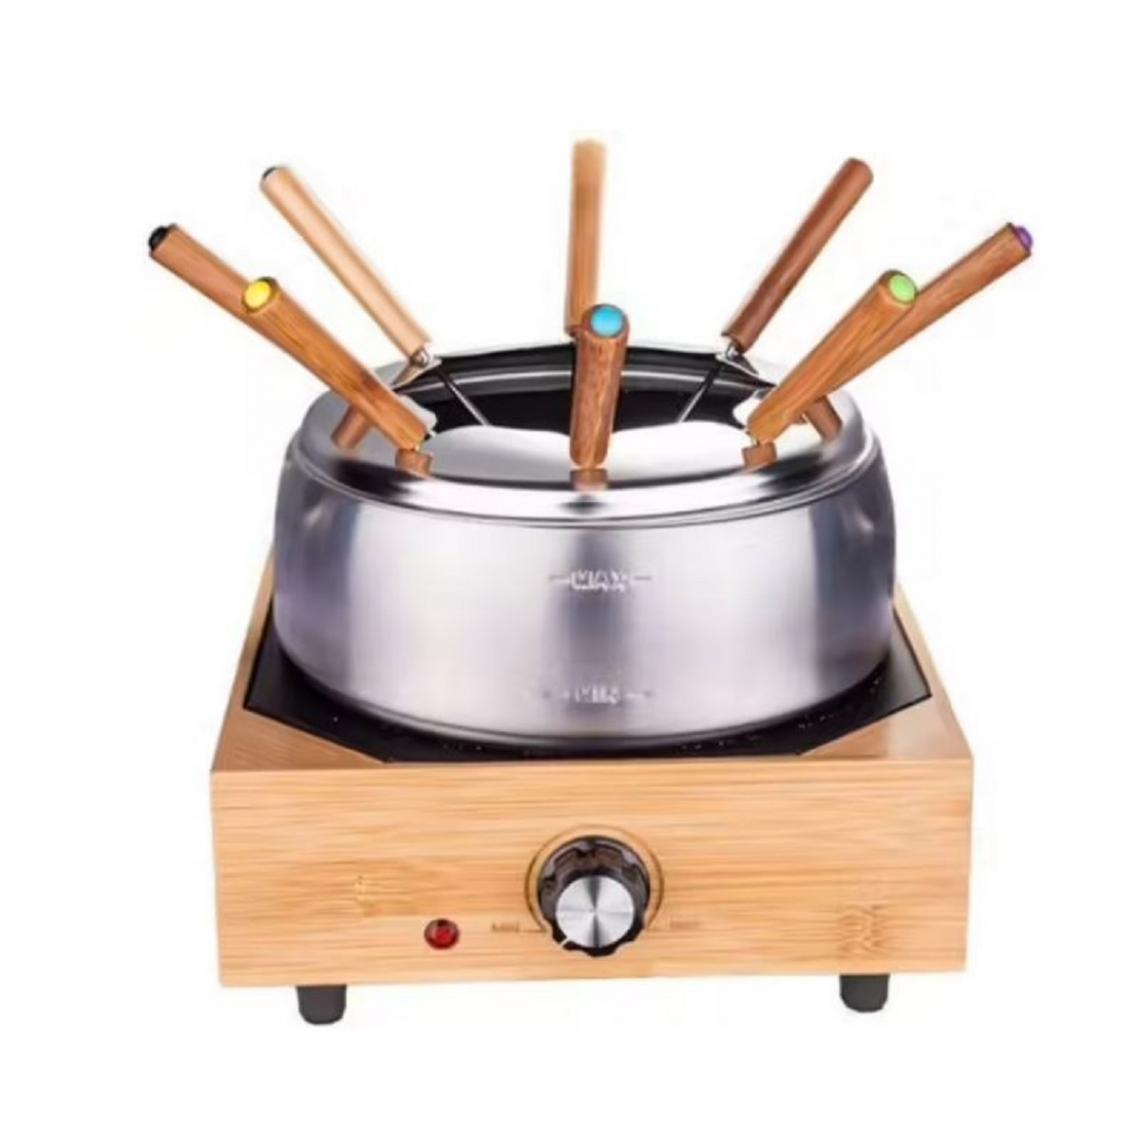 Little Balance - little balance - service à fondue 800w 8 fourchettes - 8320 - Appareil à fondue